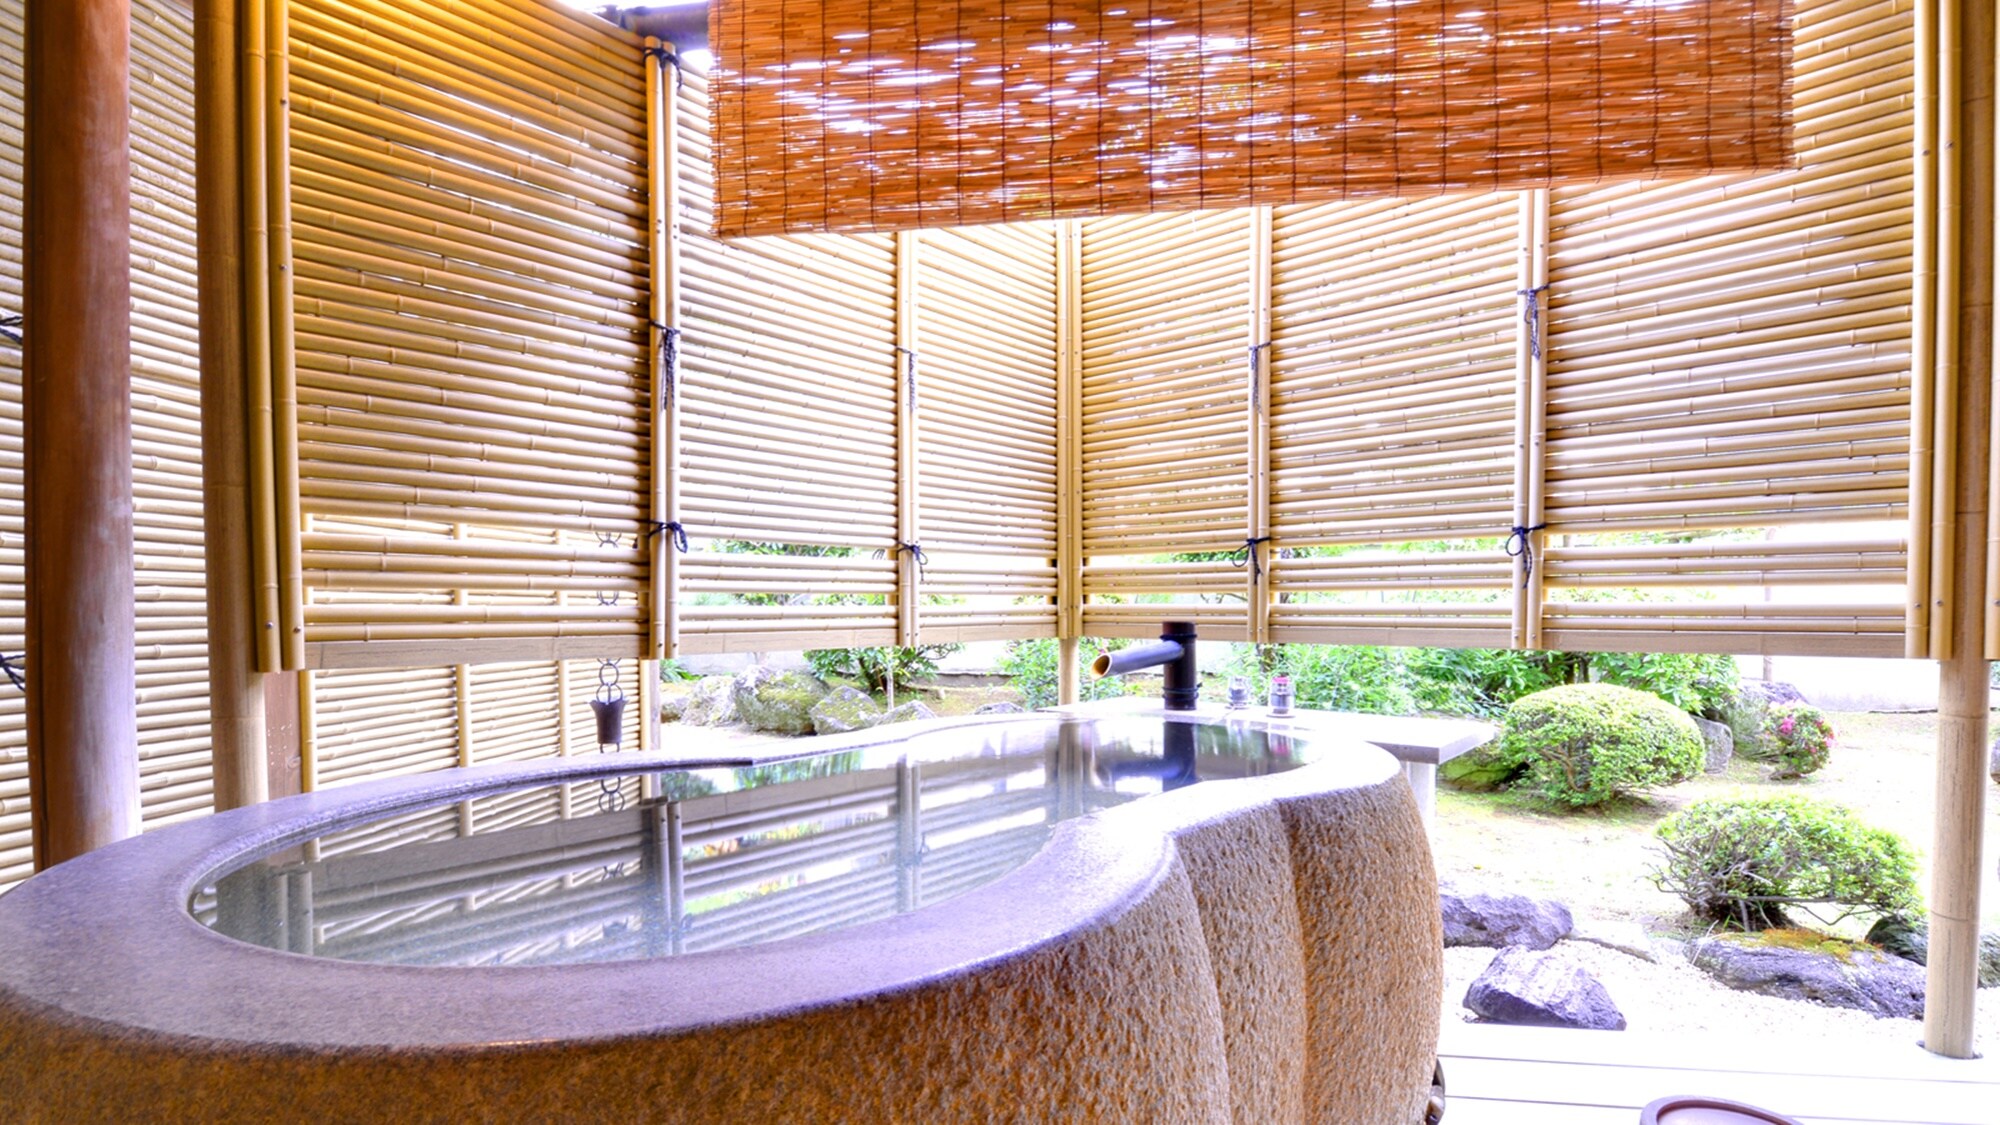 * Di kamar tamu dengan pemandian terbuka, sumber air panas alami dimonopoli. Apalagi ini adalah pusat Atami. Silakan habiskan waktu bahagia yang mewah